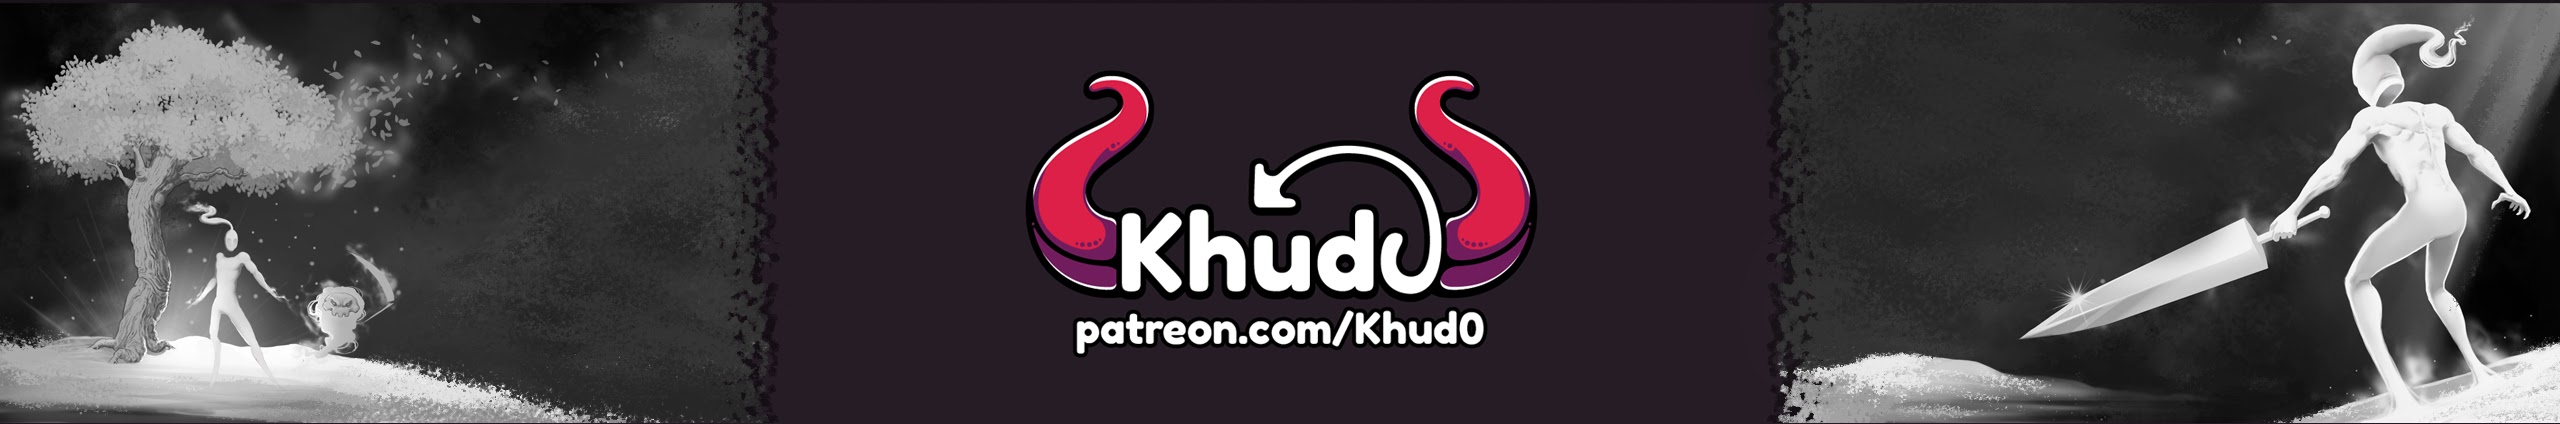 Khud0 - Indie Game Dev